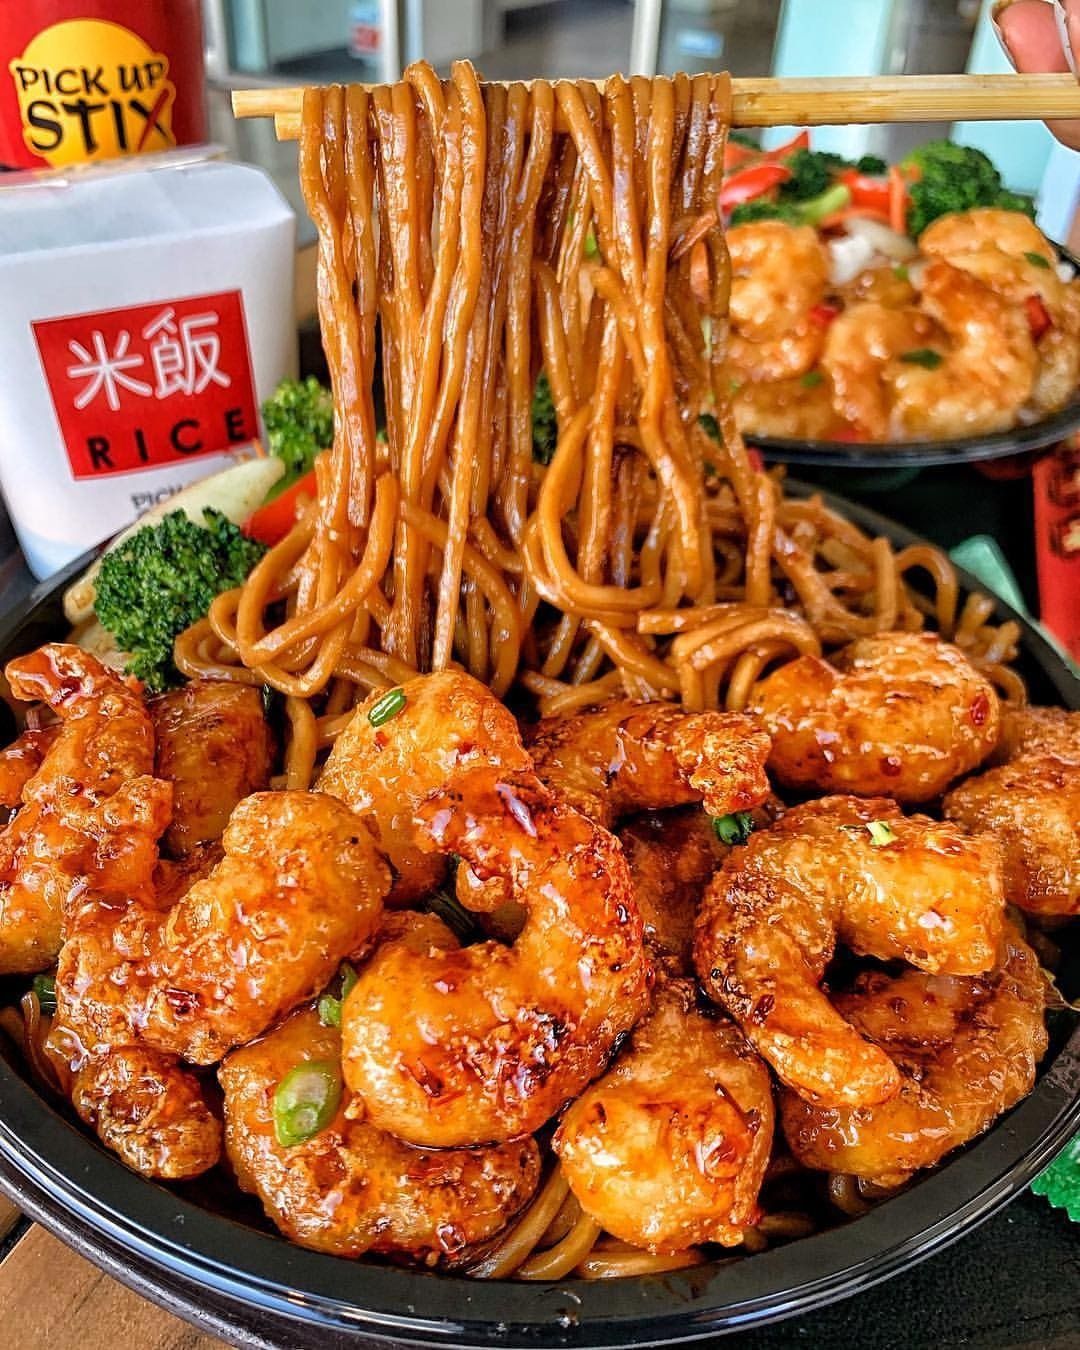 FLAK reccomend Asian noodles with shrimp